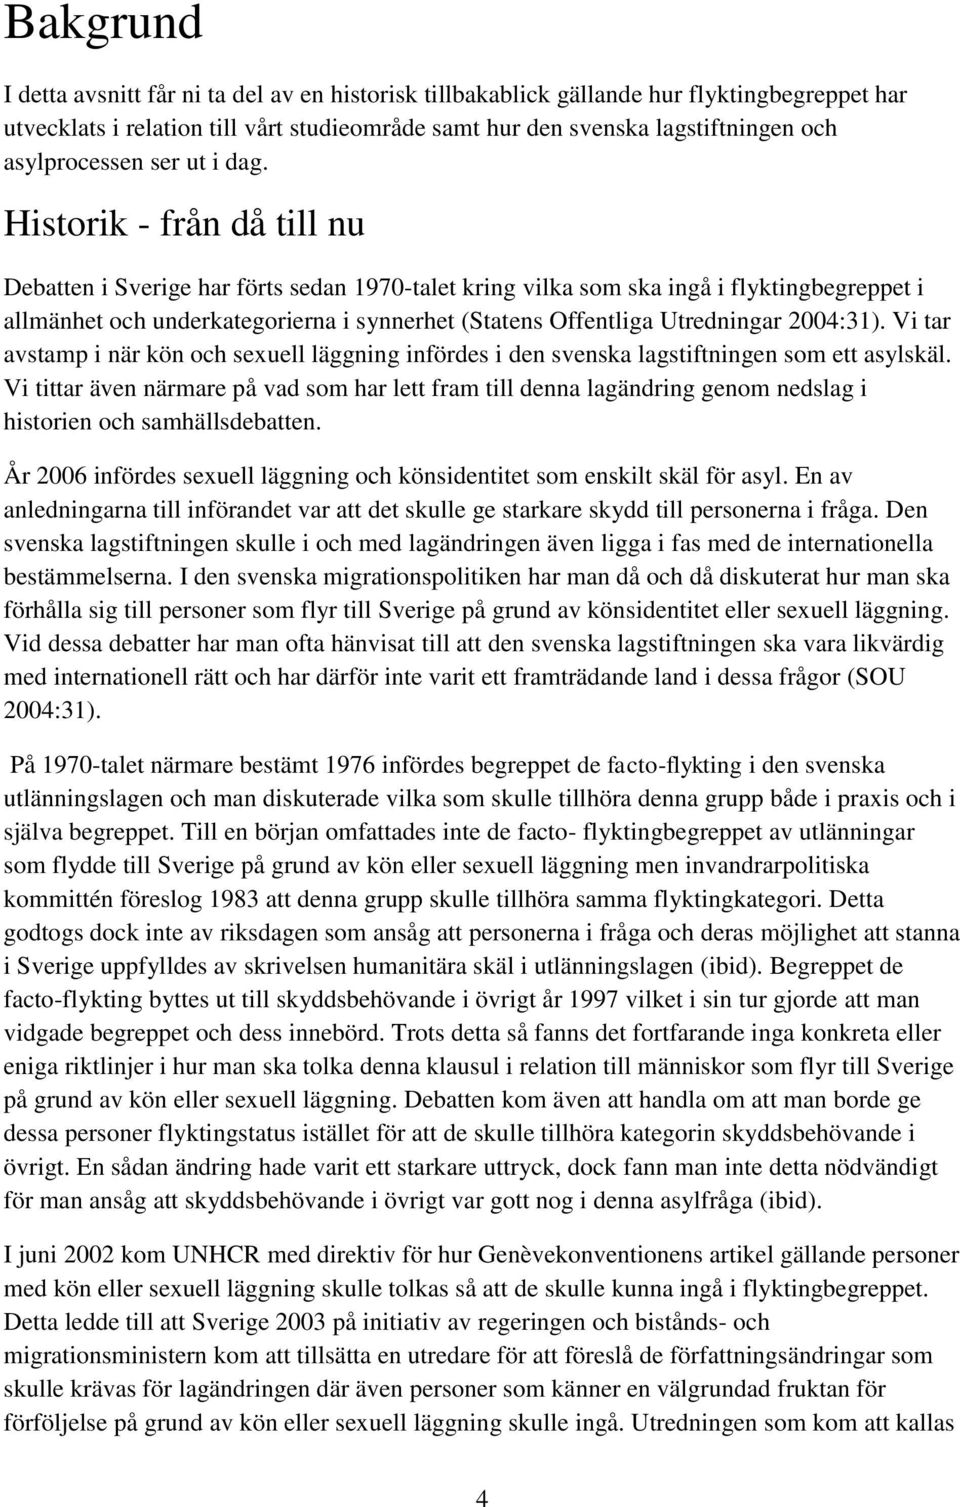 Historik - från då till nu Debatten i Sverige har förts sedan 1970-talet kring vilka som ska ingå i flyktingbegreppet i allmänhet och underkategorierna i synnerhet (Statens Offentliga Utredningar